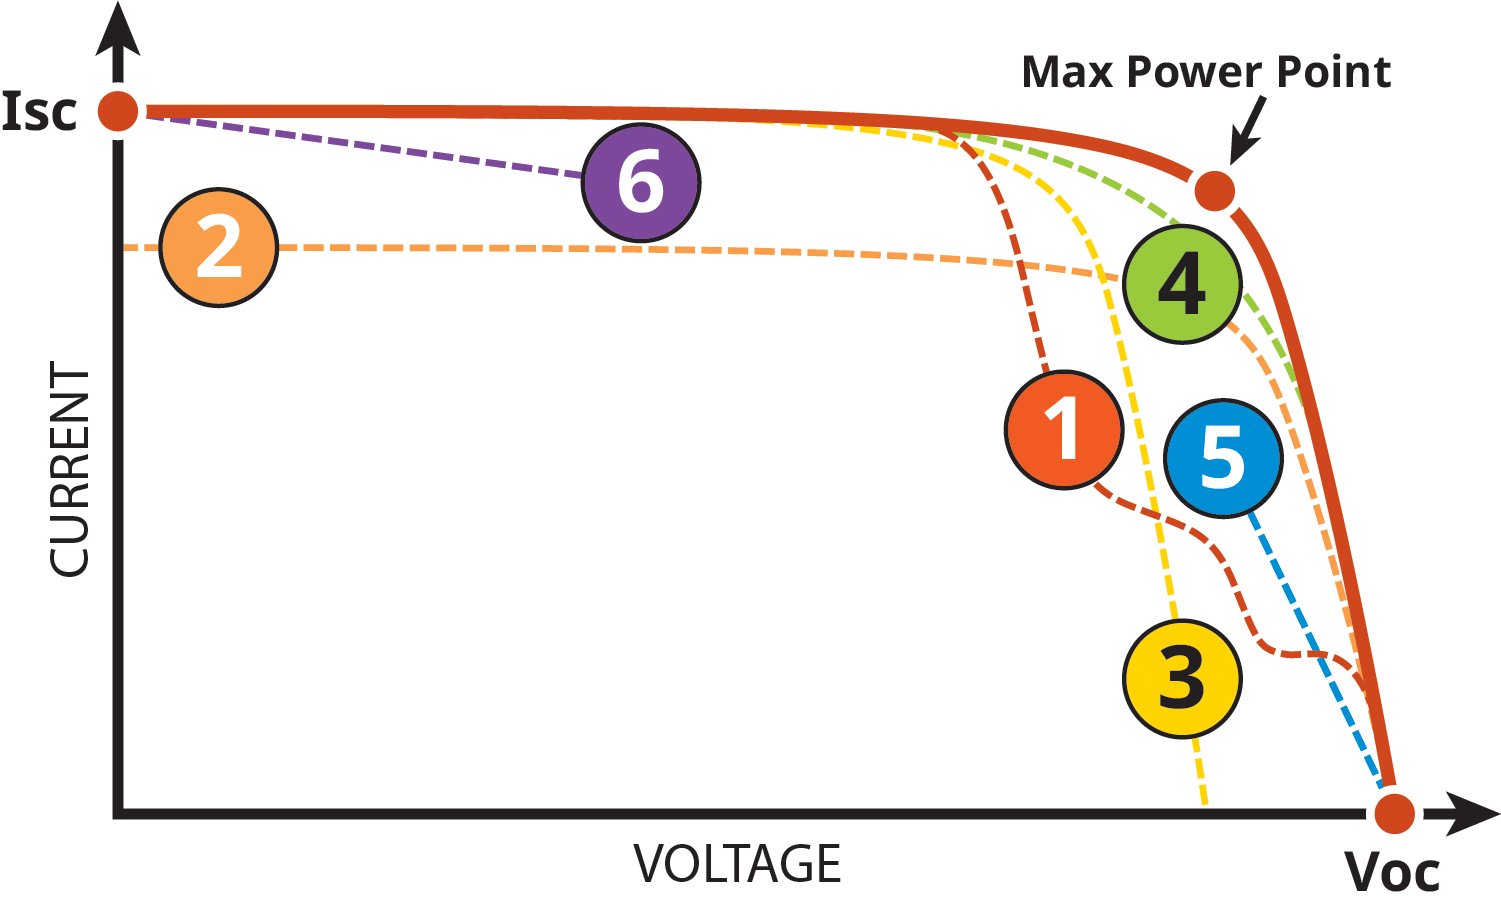 ตัวแปรของความสัมพันธ์กระแส-แรงดัน (I-V Curve) 6 ประเภทที่มีจุดพลังงานสูงสุด